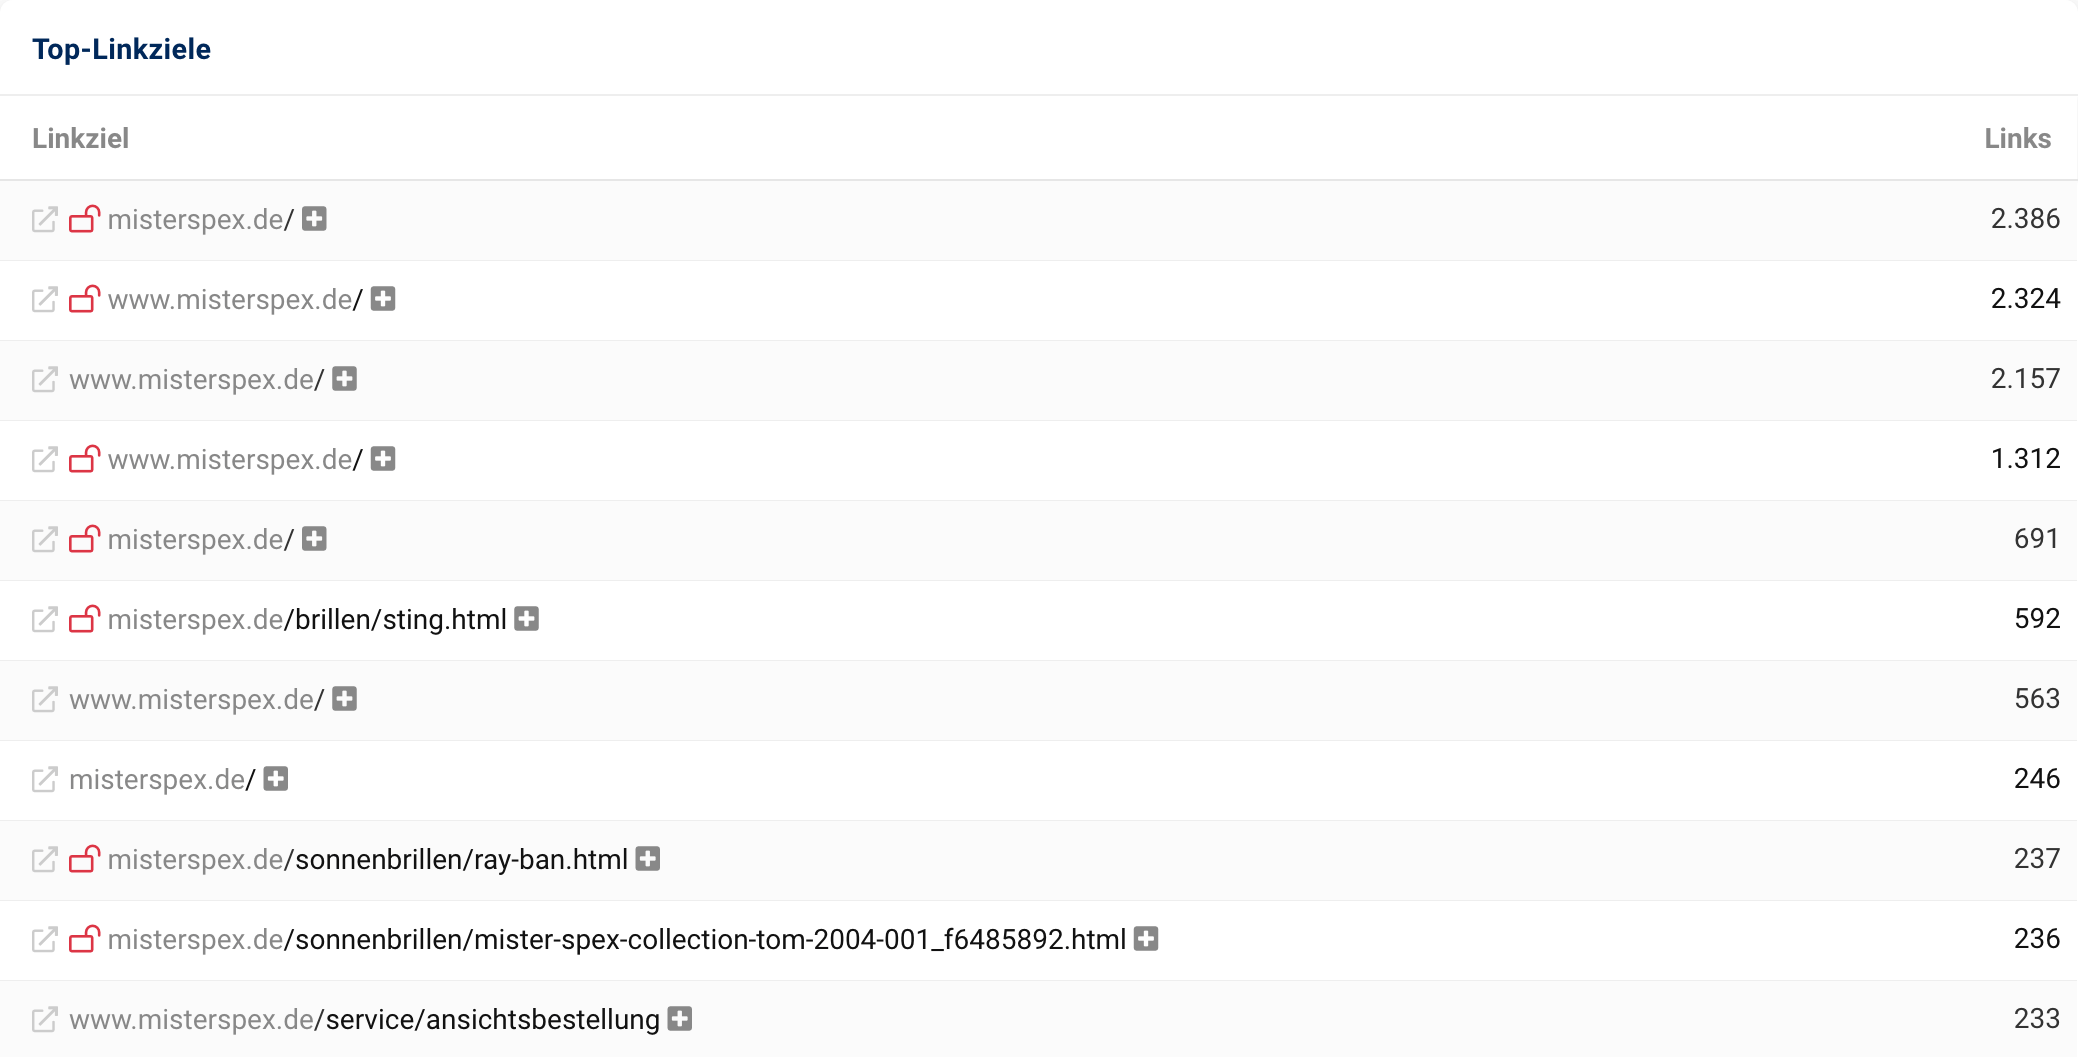 Top-Linkziele der Domain misterspex.de sind neben der Startseite zum Beispiel /brillen/sting.html, /sonnenbrillen/ray-ban.html oder /service/ansichtsbestellung.